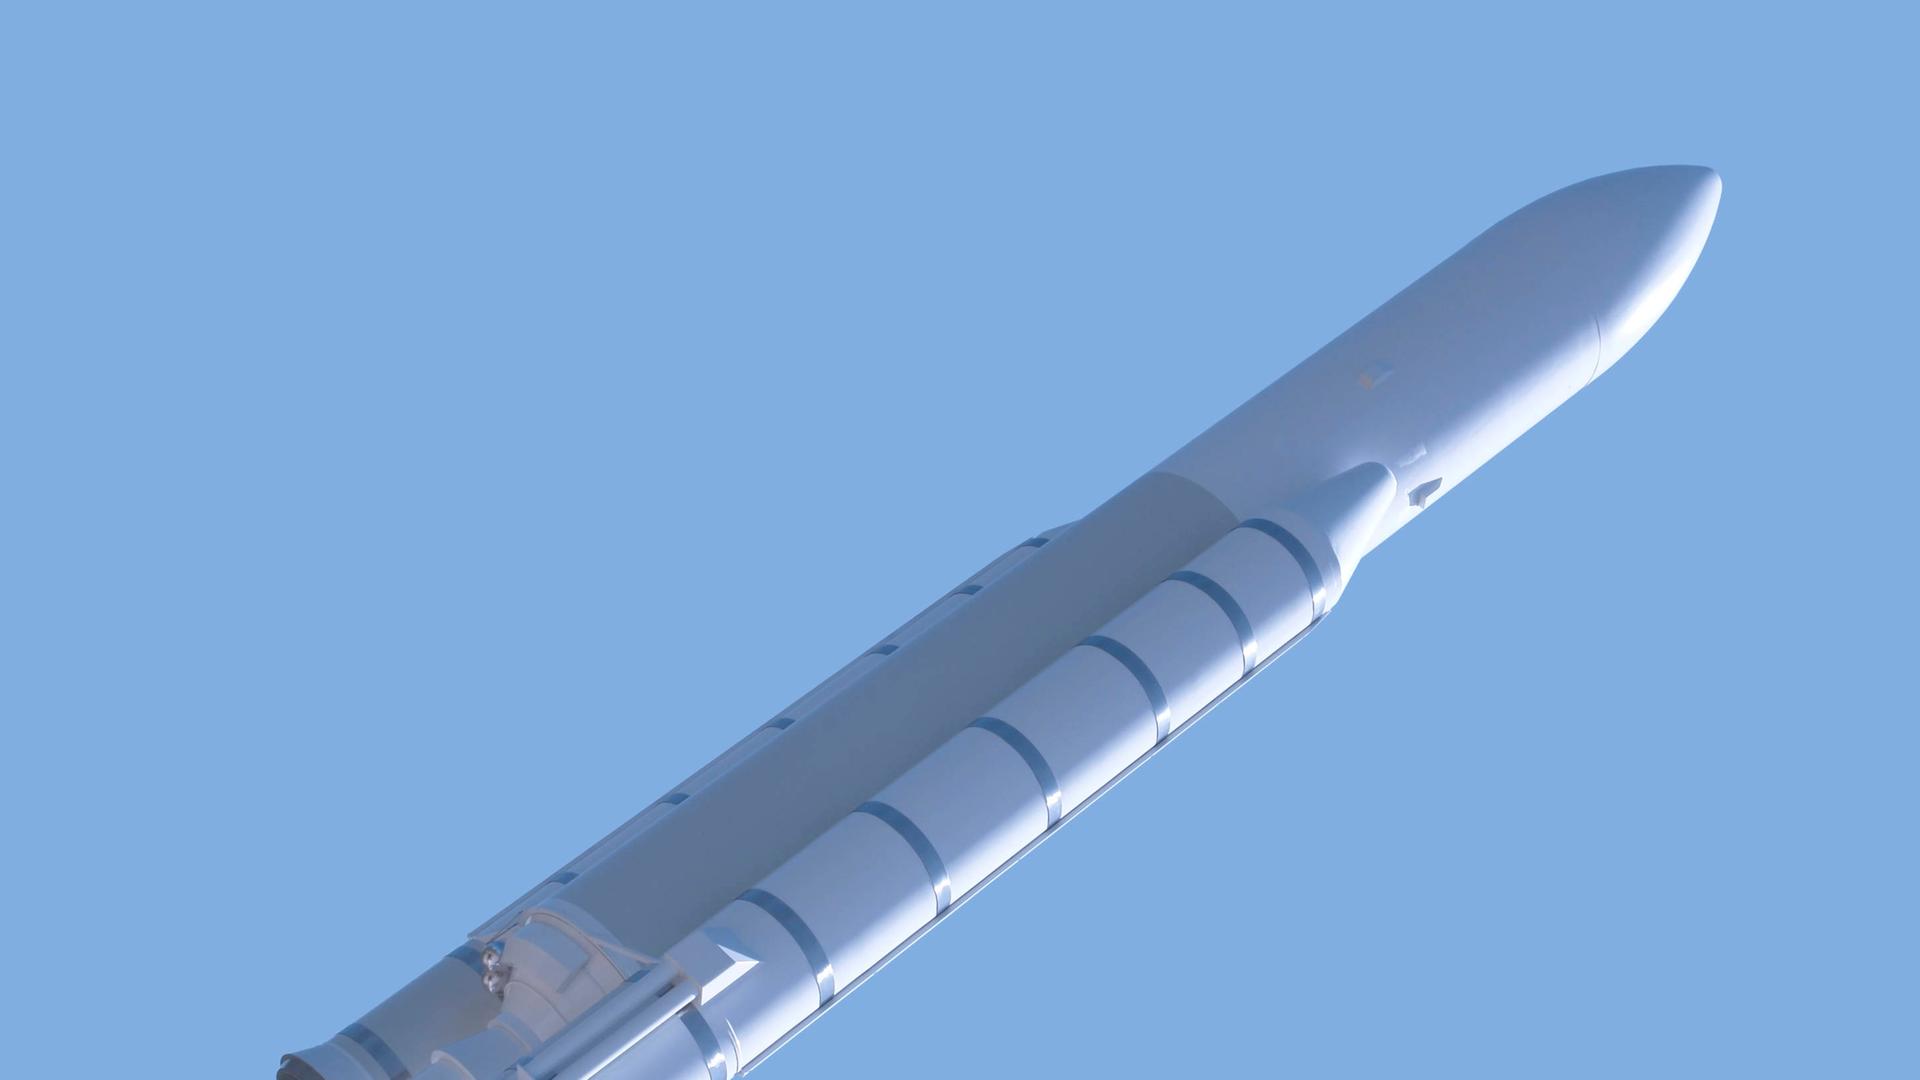 Das Bild zeigt eine fliegen Trägerrakete vor blauem Himmel